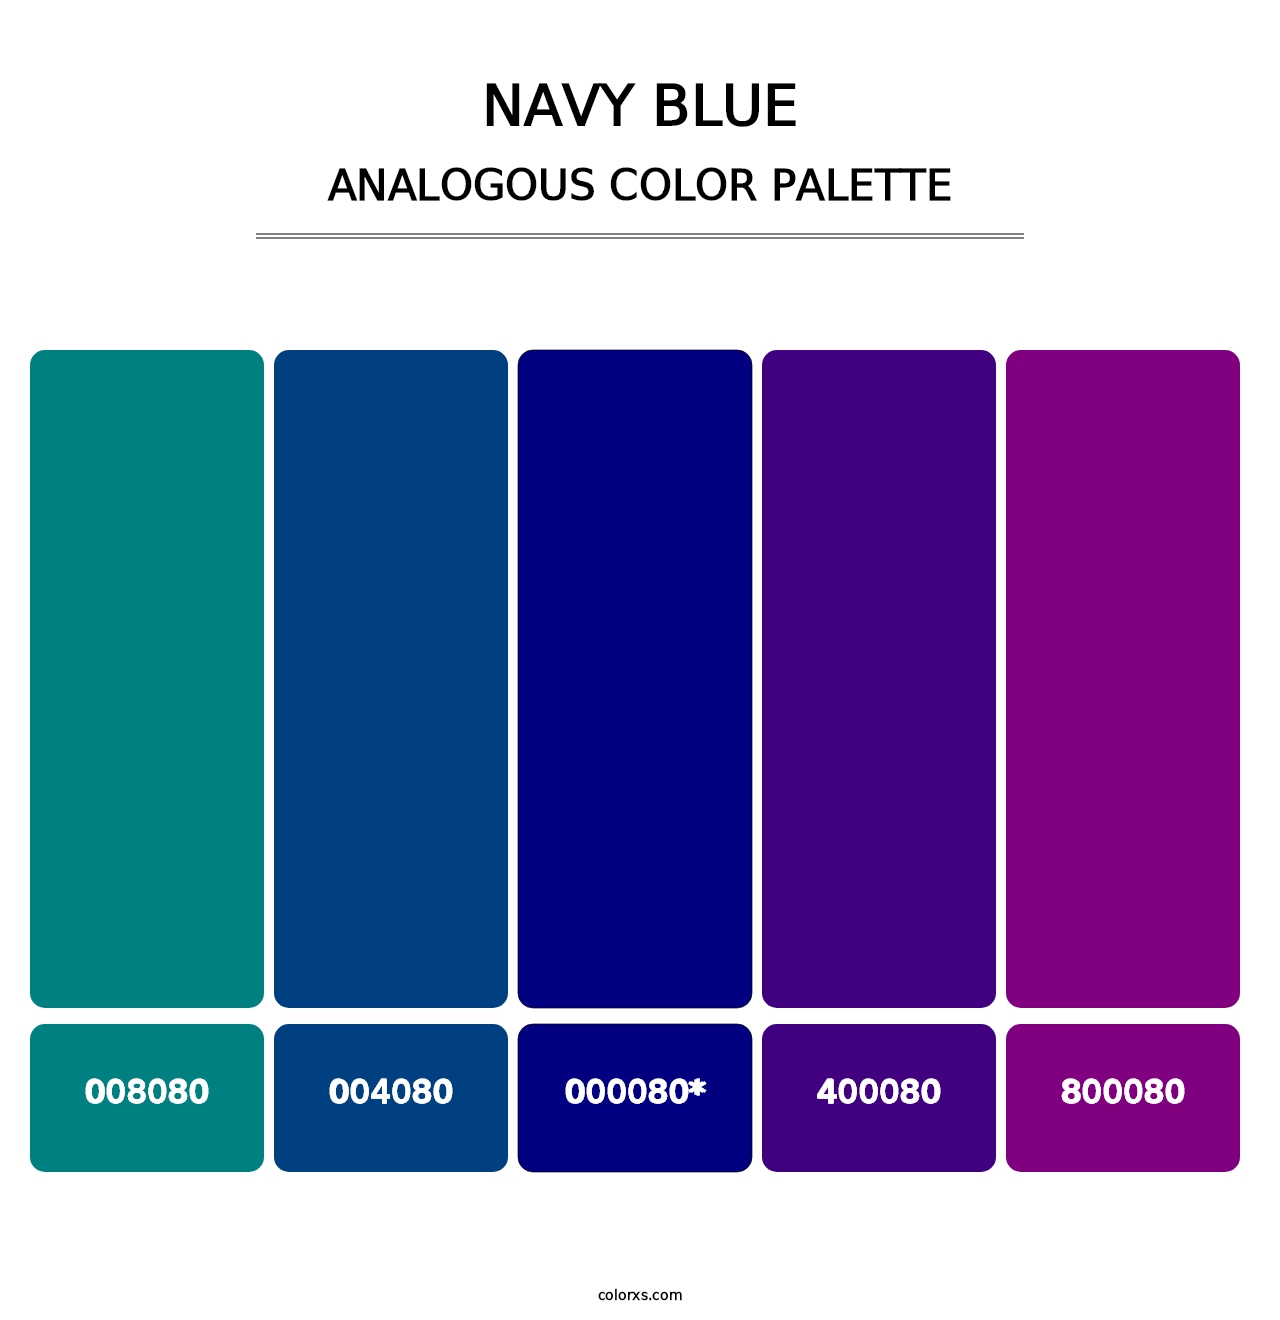 Navy Blue - Analogous Color Palette